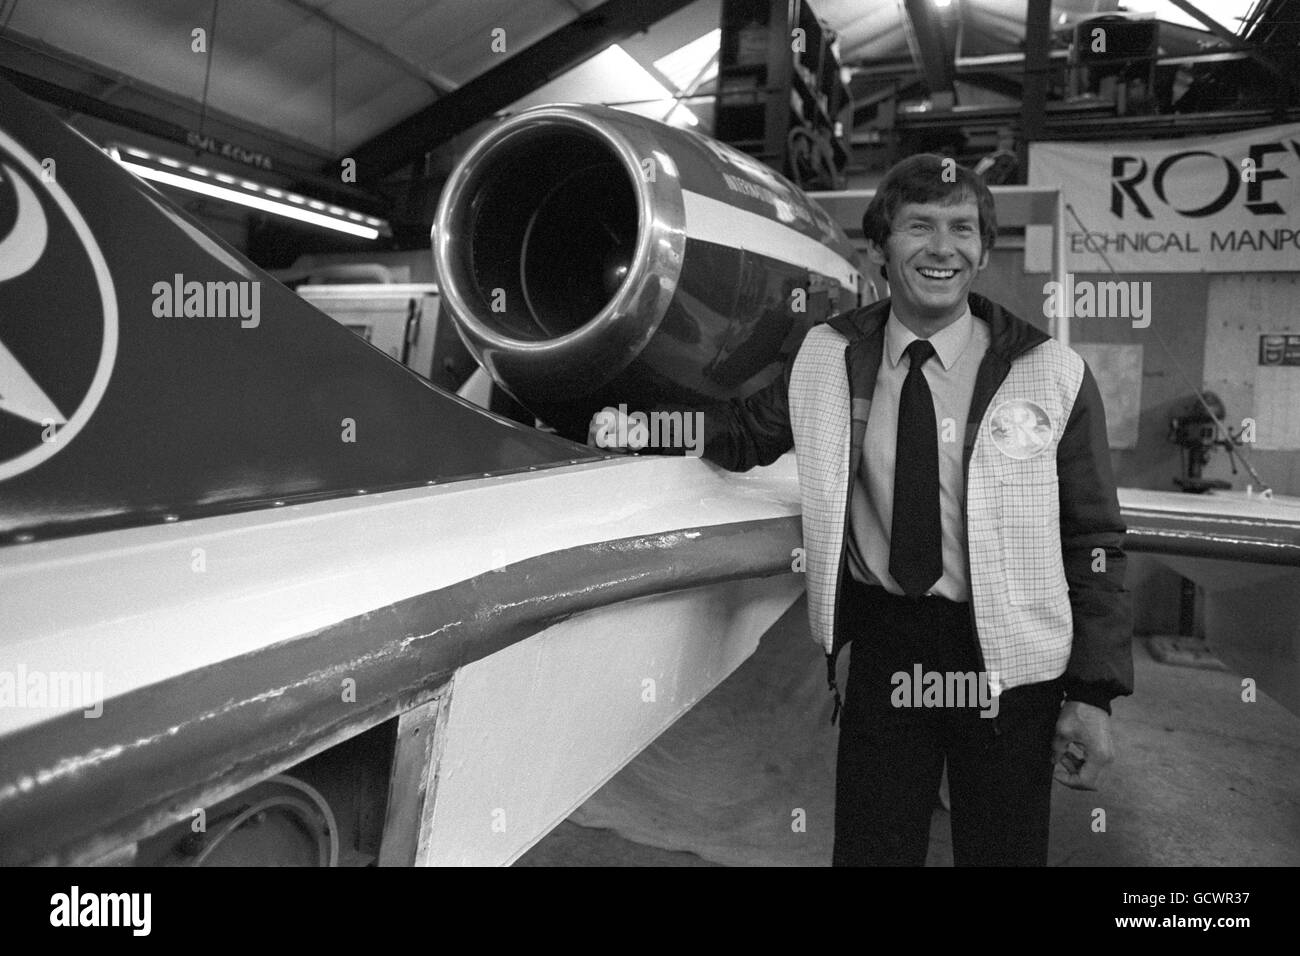 Tony Fahey, homme d'affaires de Manchester, lors du dévoilement de Miss Alton Towers, le hors-bord propulsé par jet, dans lequel il espère battre le record mondial de vitesse de l'eau de 319.627 km/h tenu par l'australien Ken Warby, établi en 1978. Banque D'Images